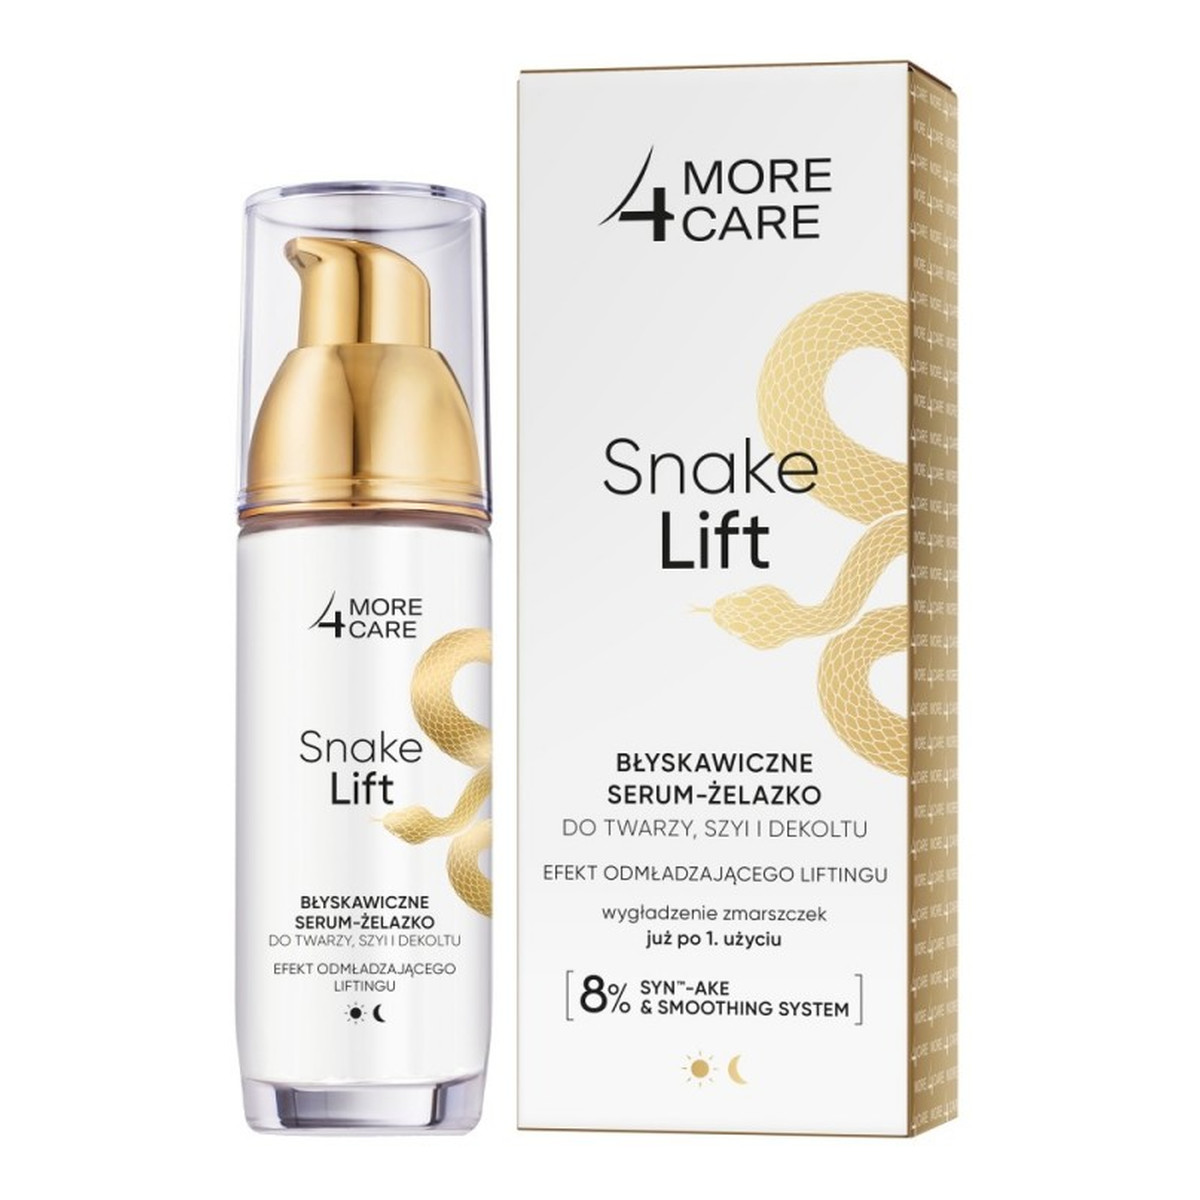 AA More 4 Care Snake Lift Błyskawiczne serum-żelazko do twarzy szyi i dekoltu 35ml